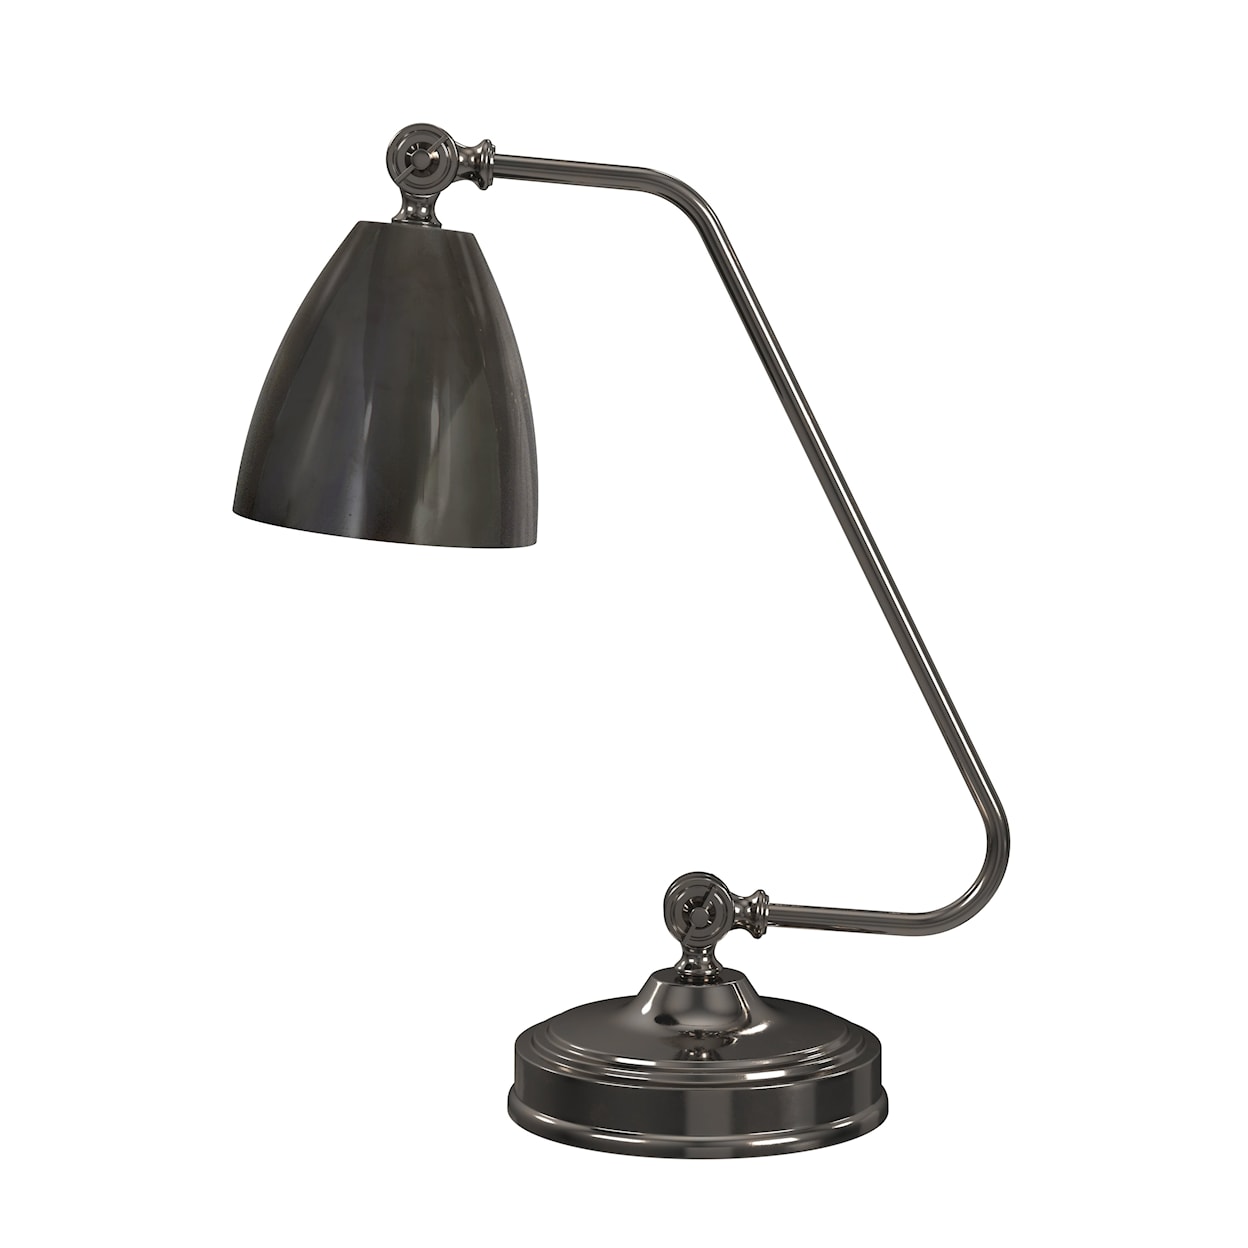 Bassett Mirror Table Lamps Shine Desk Lamp